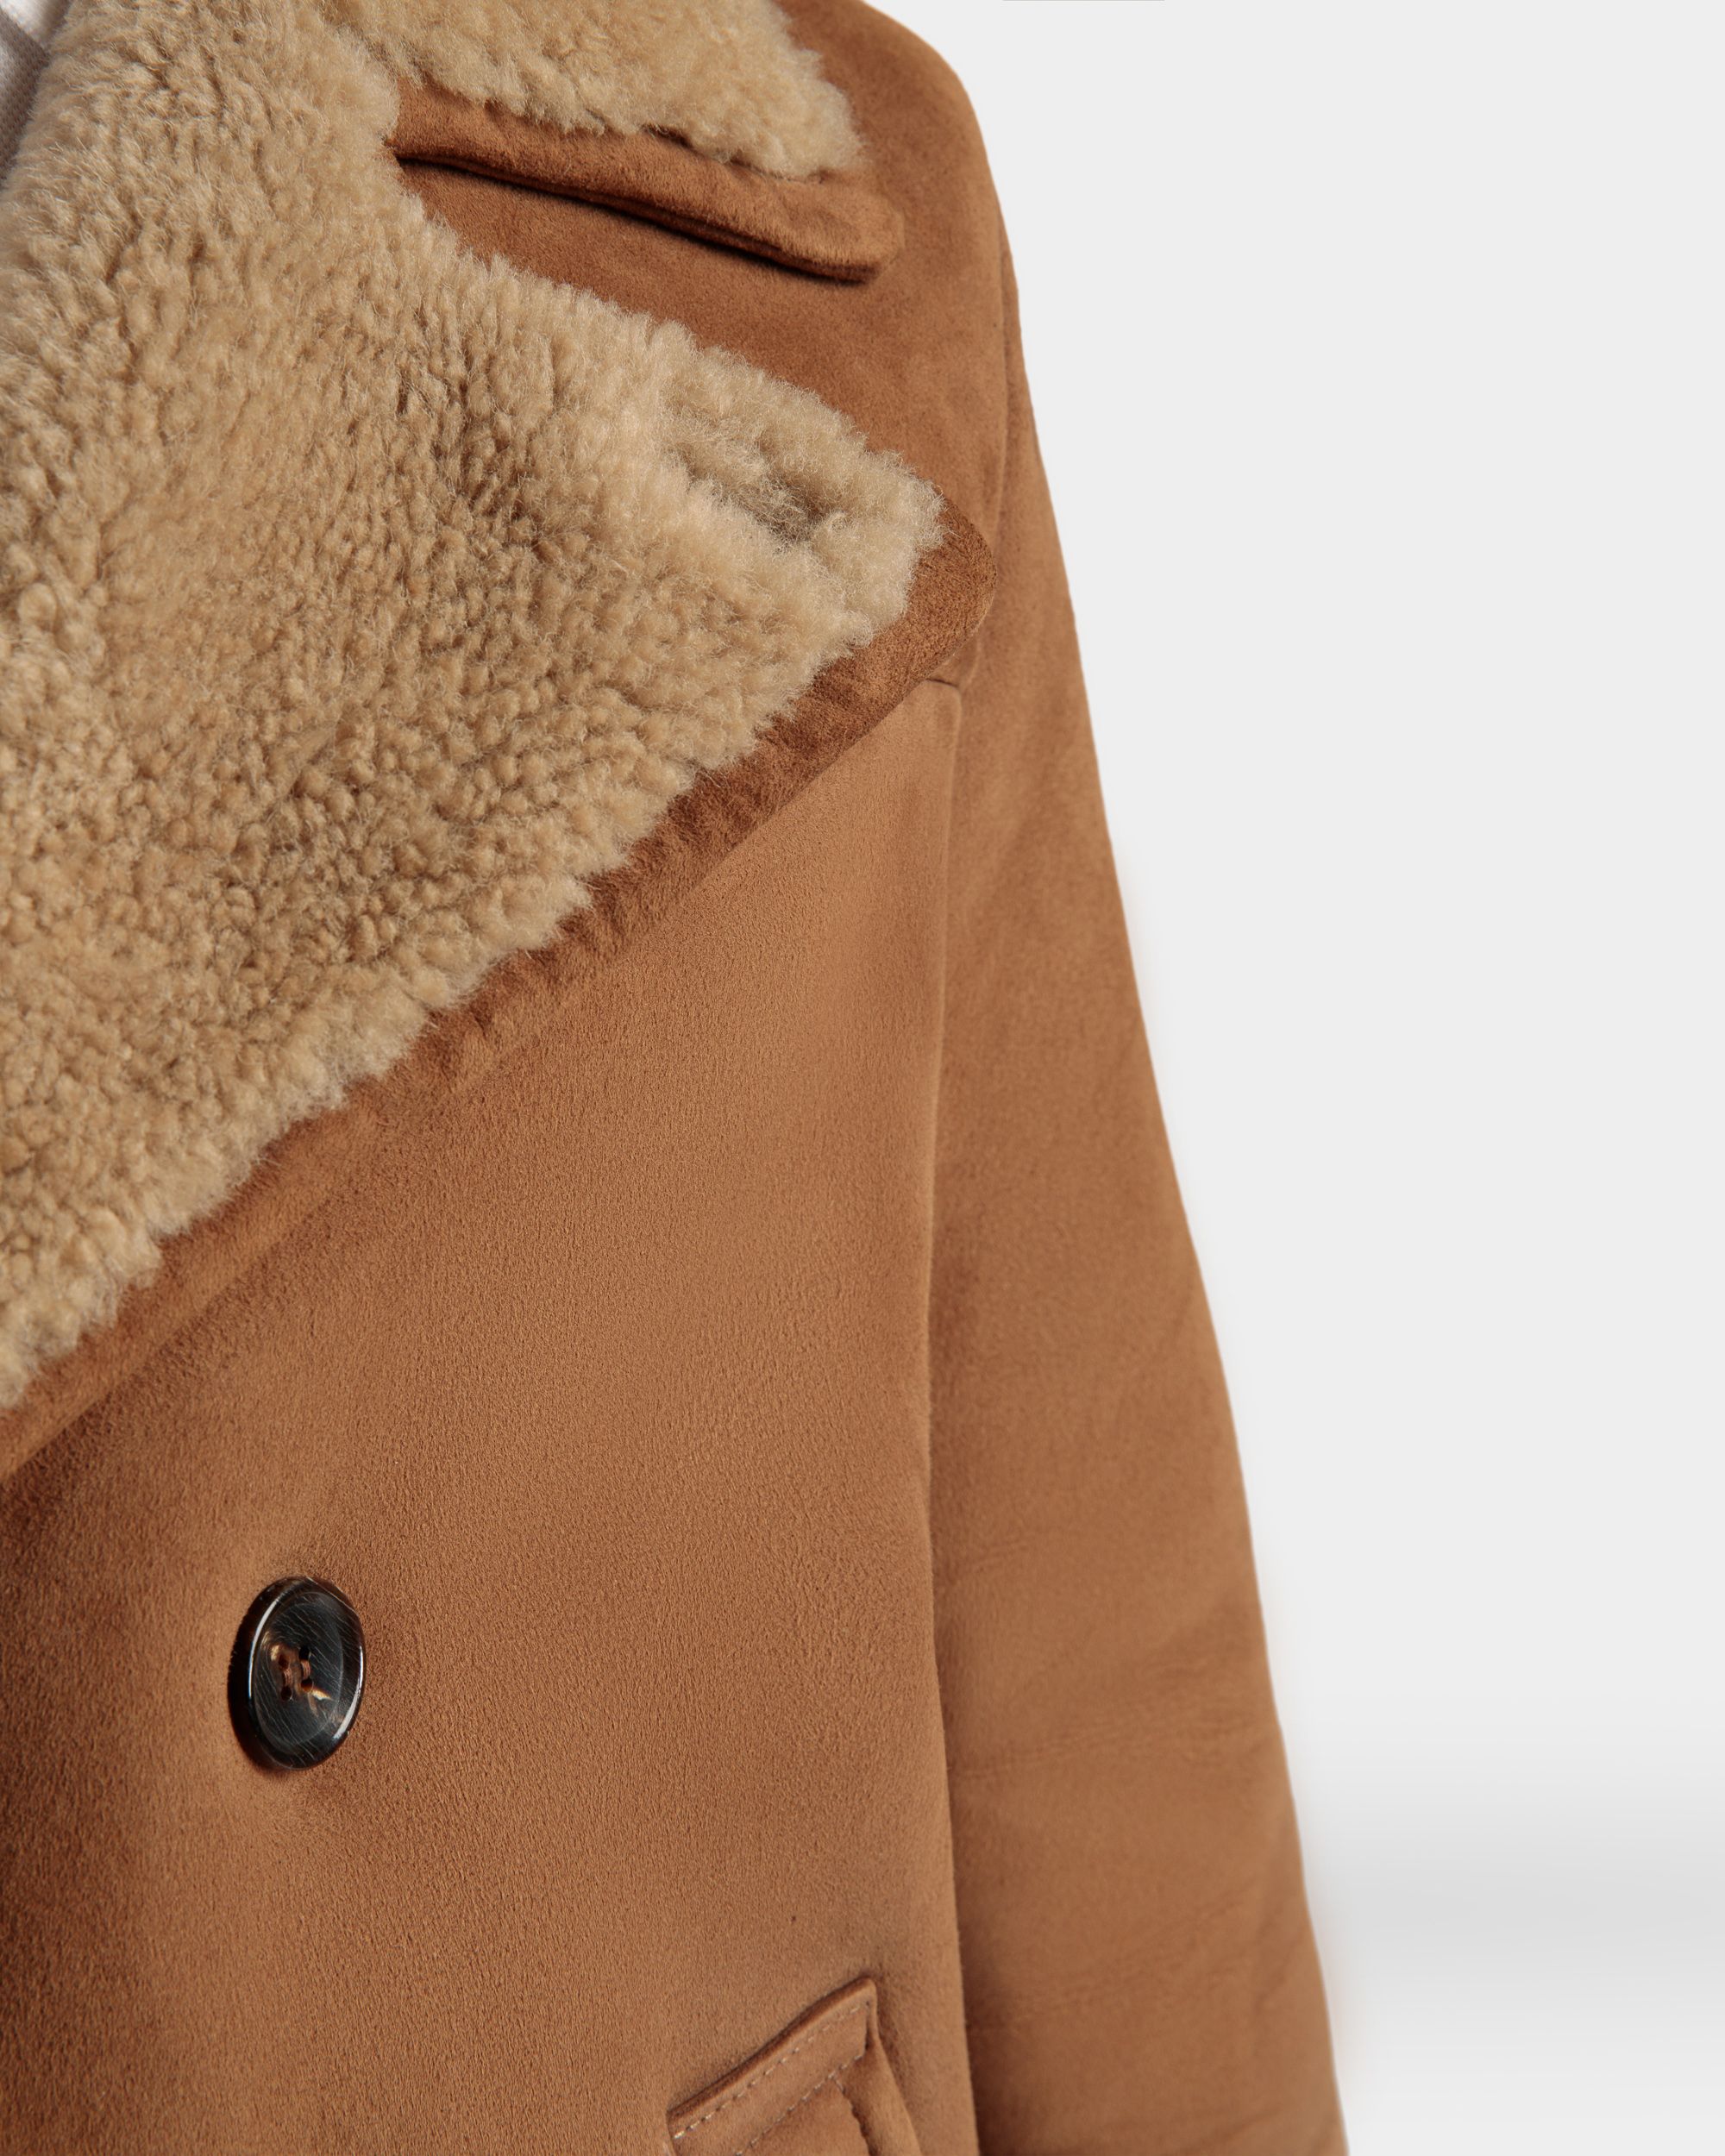 Zweireihiger Lammfellmantel | Jacken und Mäntel für Herren | Braunes Veloursleder | Bally | Model getragen Detail